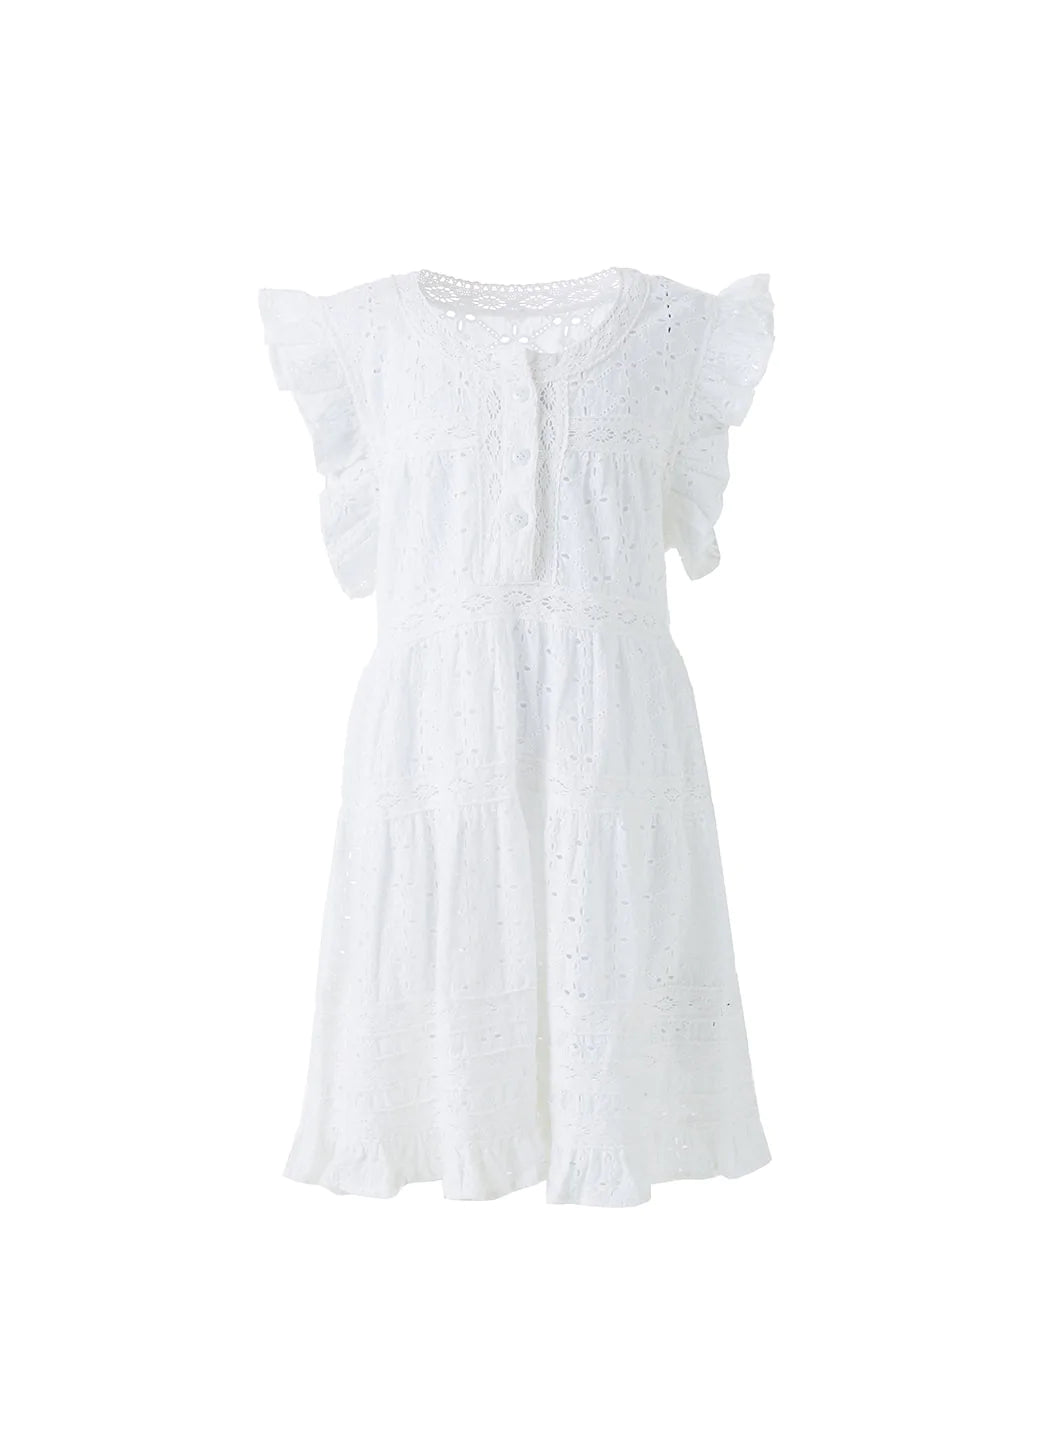 Baby_Rebekah_White_Dress_Cutout_2023